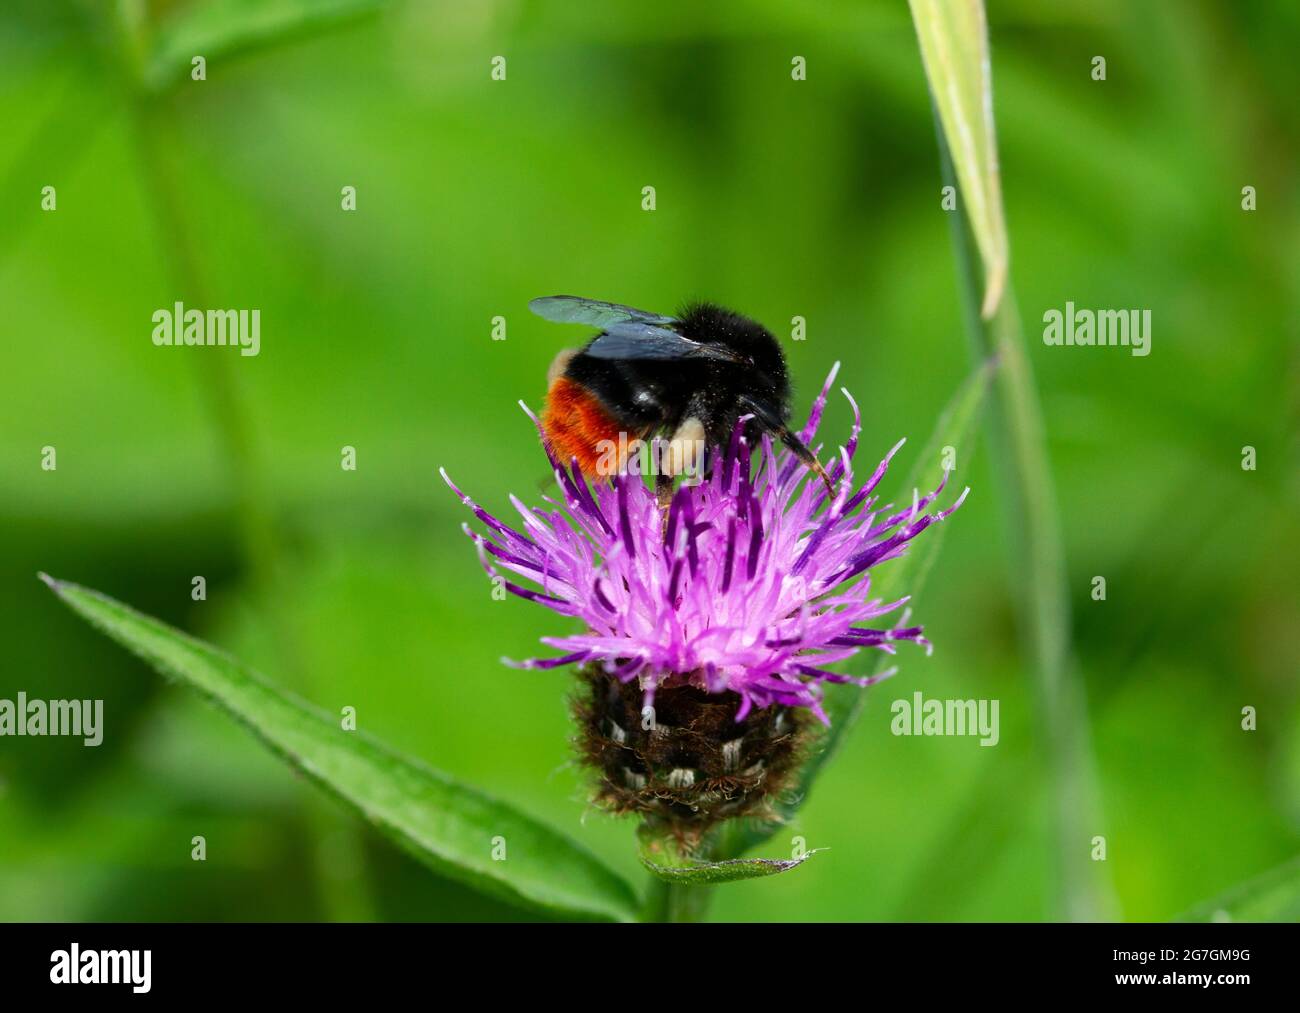 Una abeja de cola roja se alimenta del néctar y recoge el polen de una flor de la maleza. El polen es llevado de vuelta a la pequeña colonia para alimentar a la reina Foto de stock